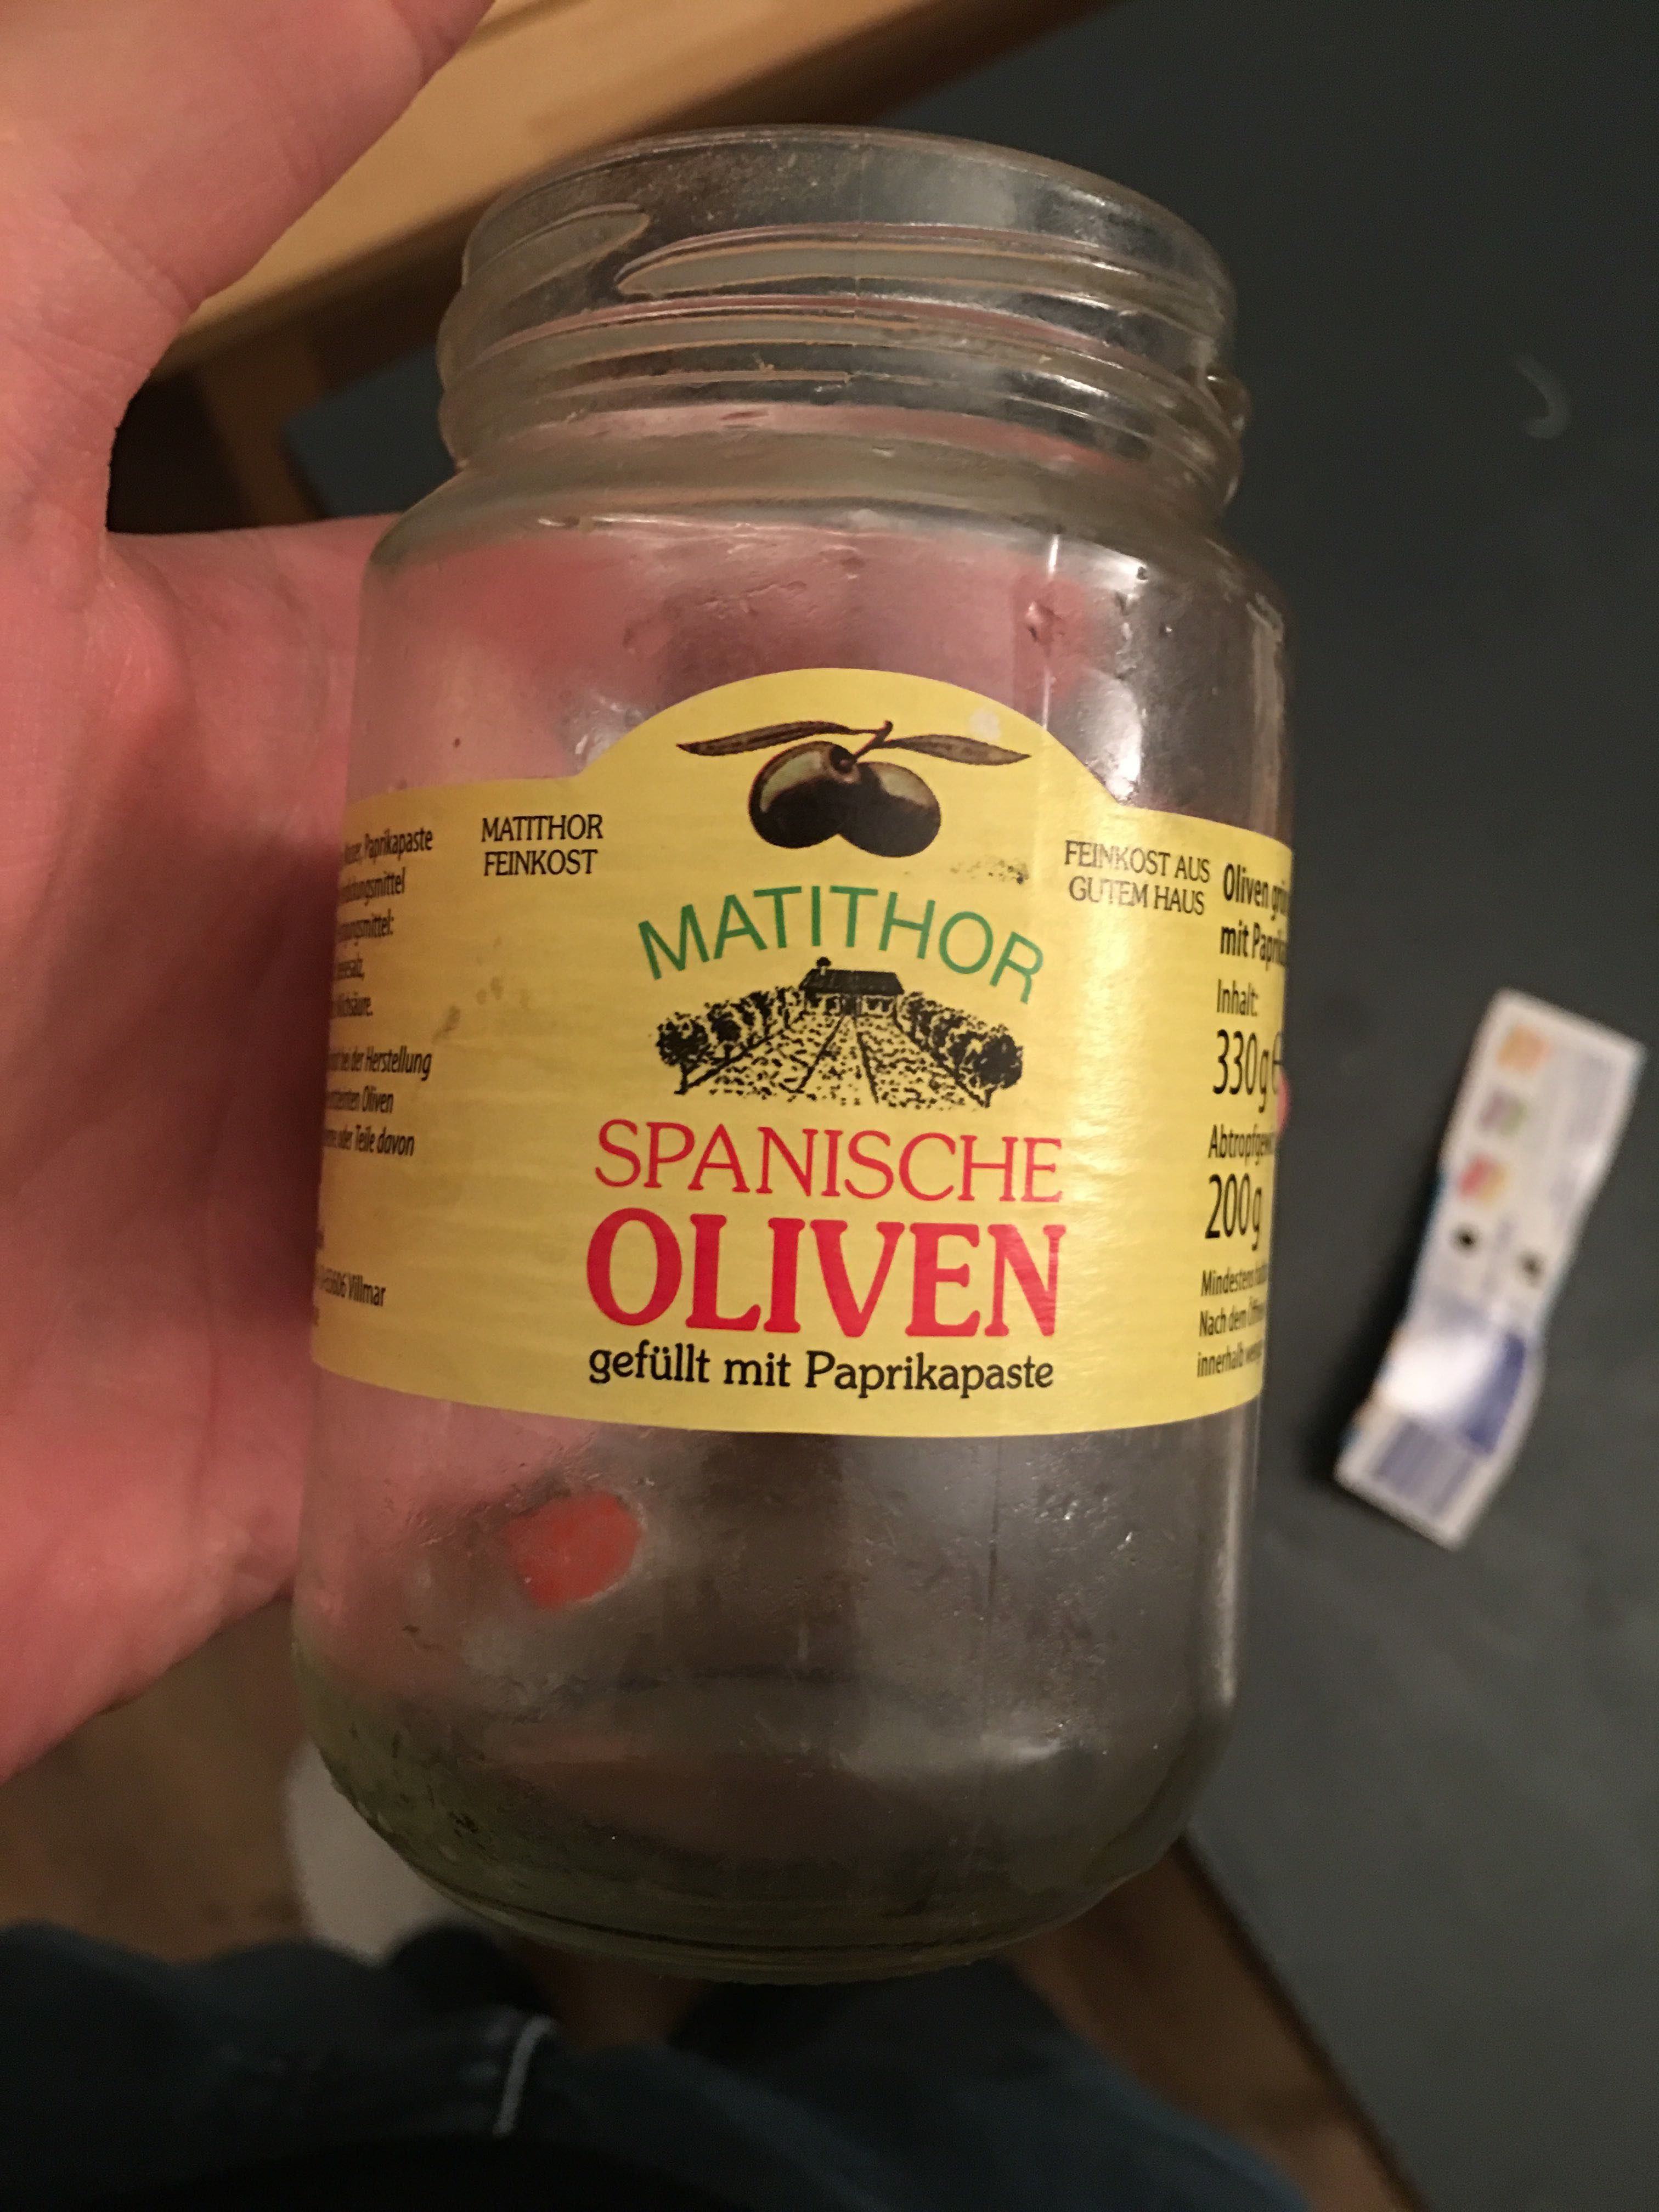 Spanische Oliven, gefüllt mit Paprikapaste - Product